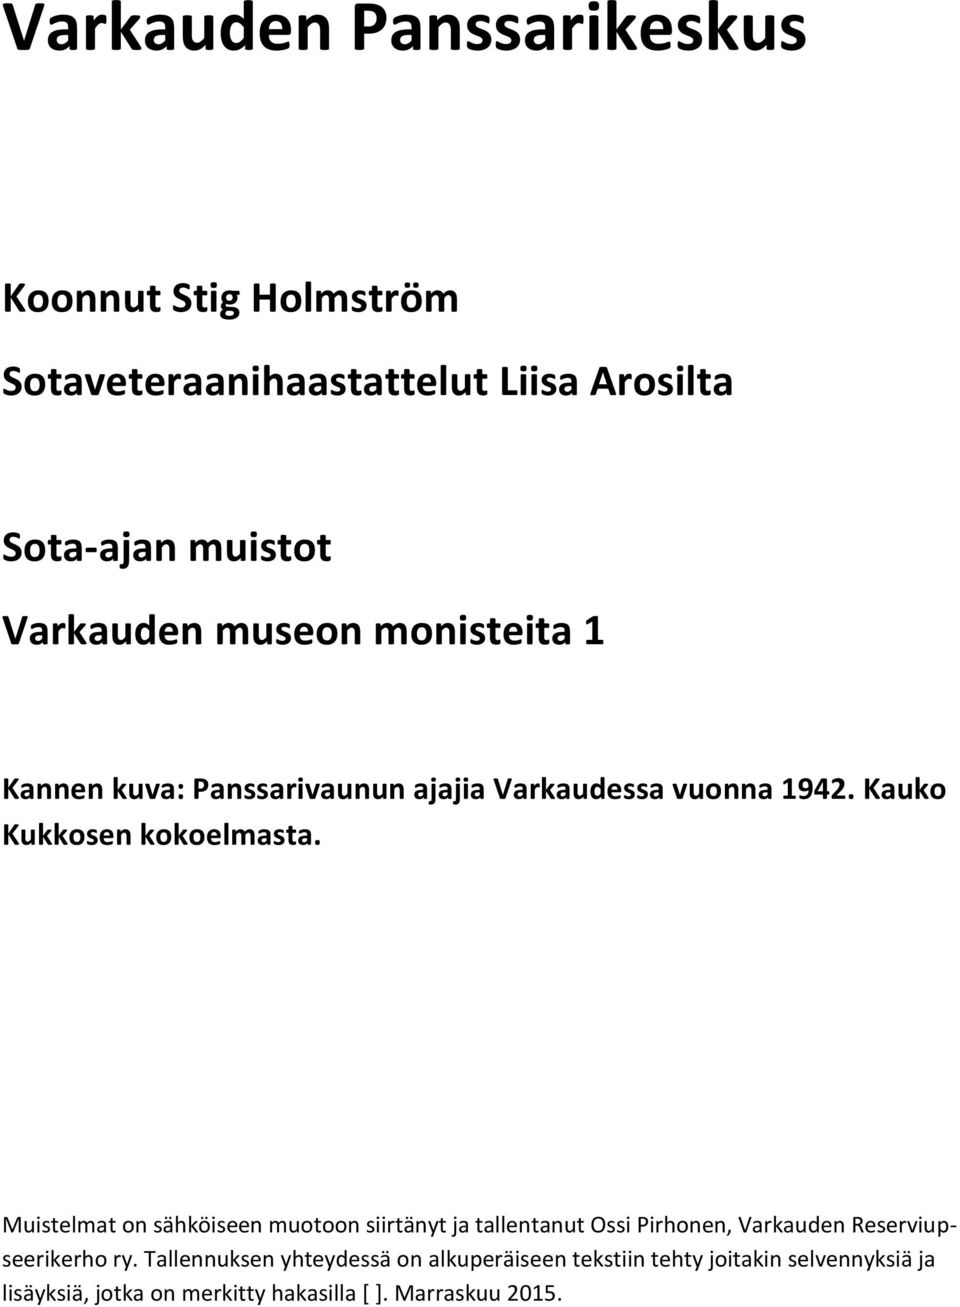 Muistelmat on sähköiseen muotoon siirtänyt ja tallentanut Ossi Pirhonen, Varkauden Reserviupseerikerho ry.